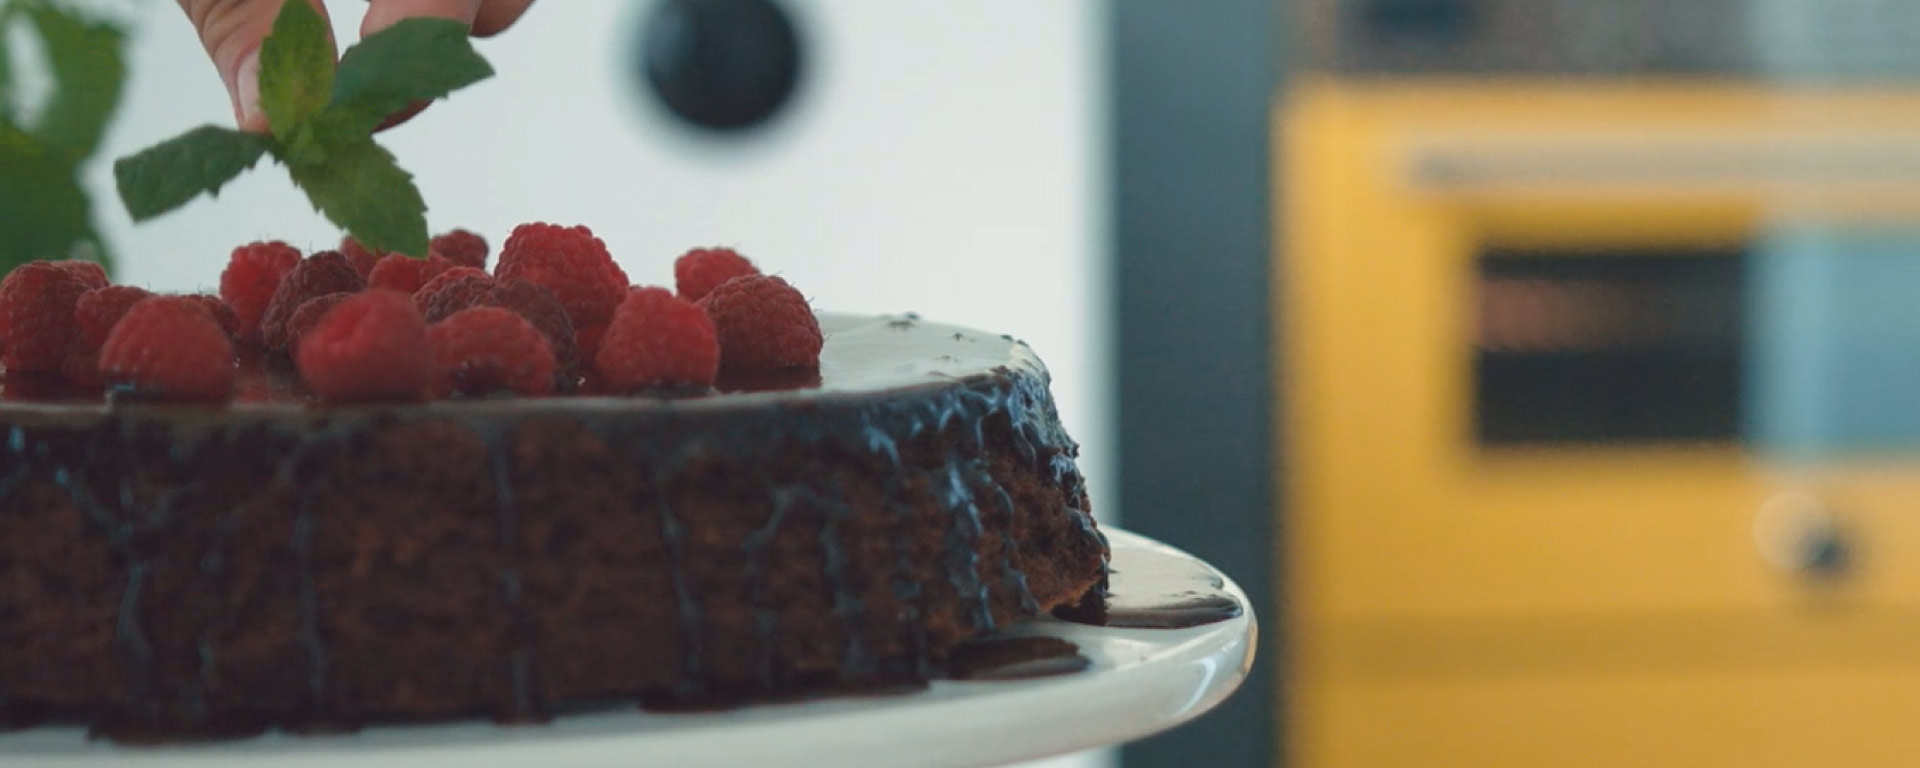 Chocolate cake with fresh raspberries - Bertazzoni